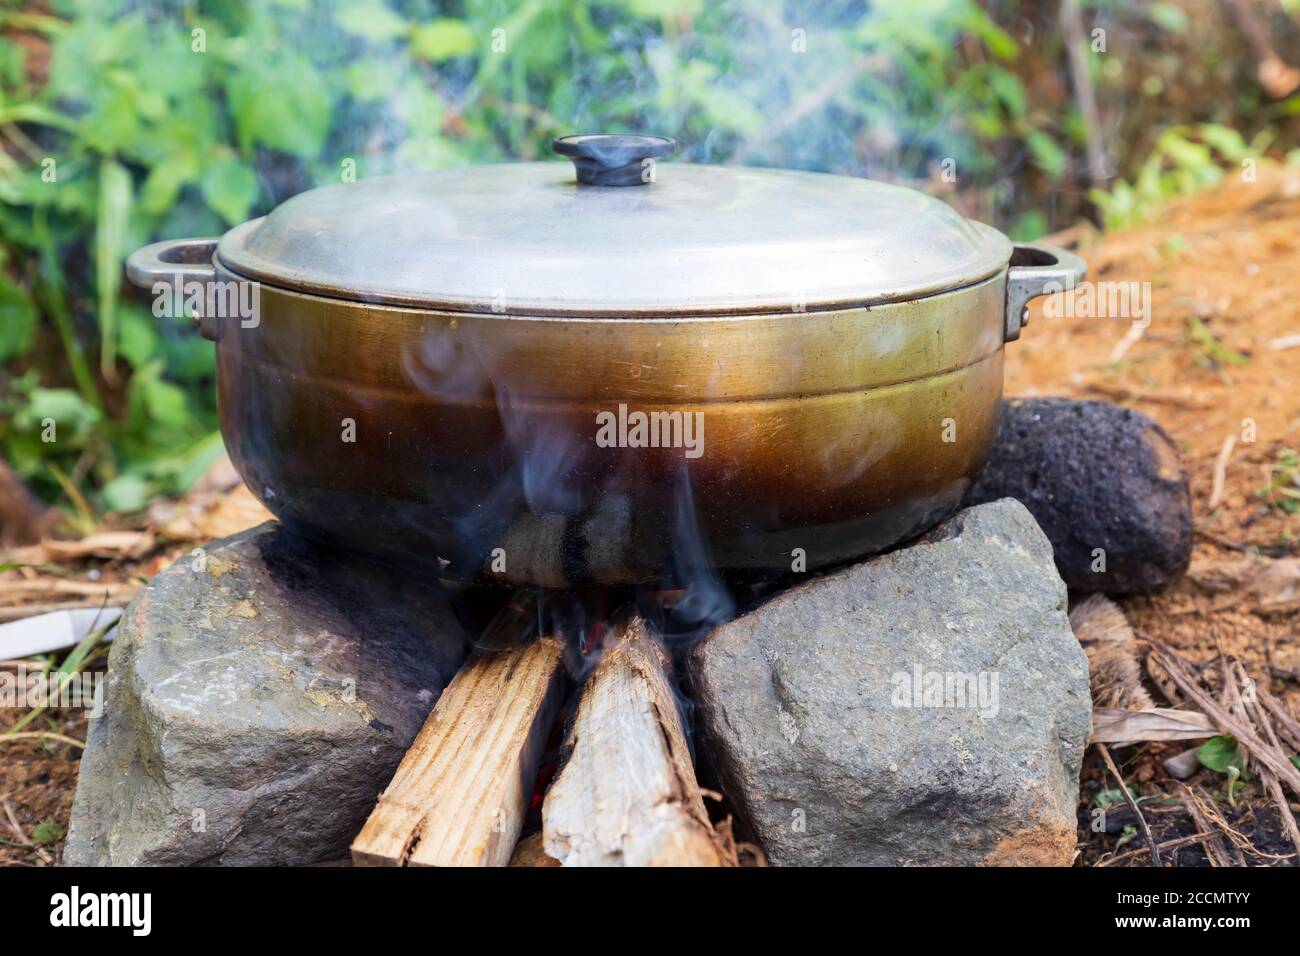 Un pot en aluminium sur un feu de bois retin gon deux pierres sur le sol Banque D'Images